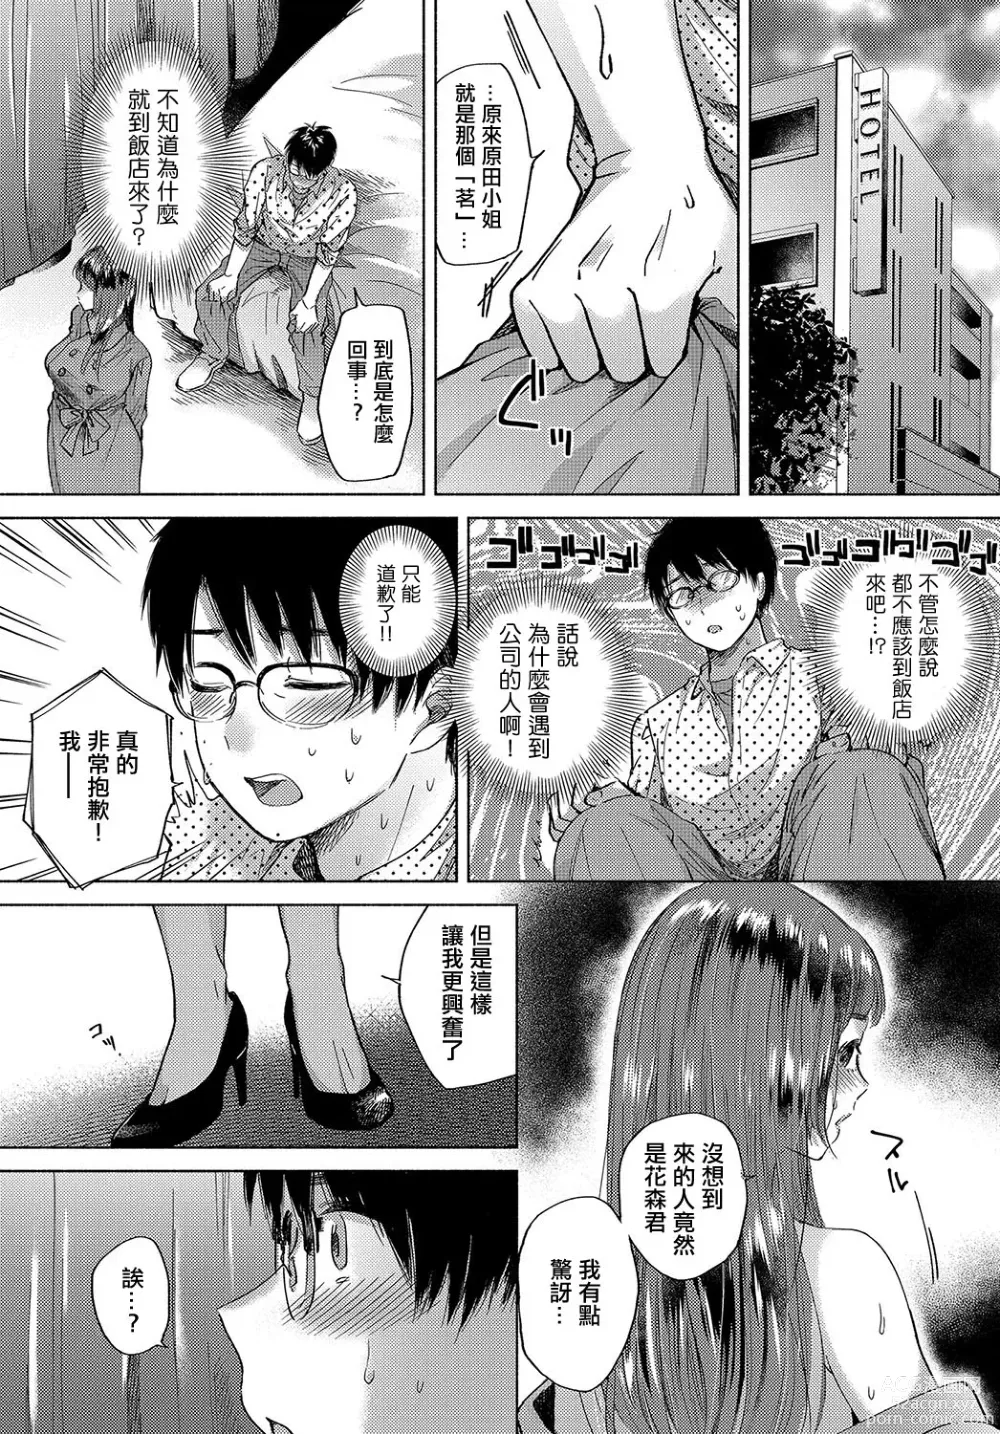 Page 4 of manga Hokorobi